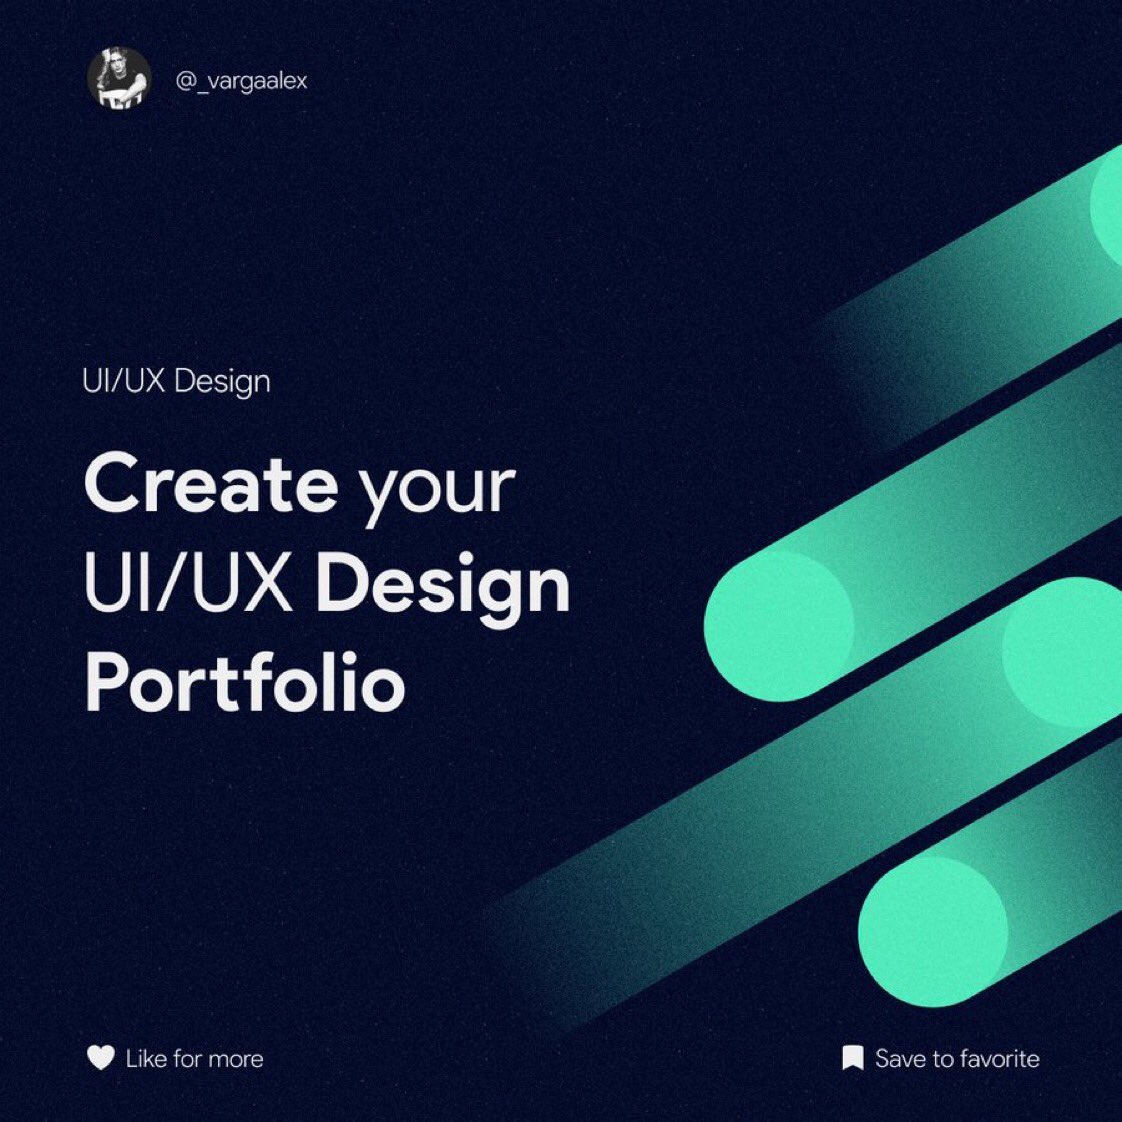 Create your UX/UI Design Portfolio ✅🚀

Thread 🧵